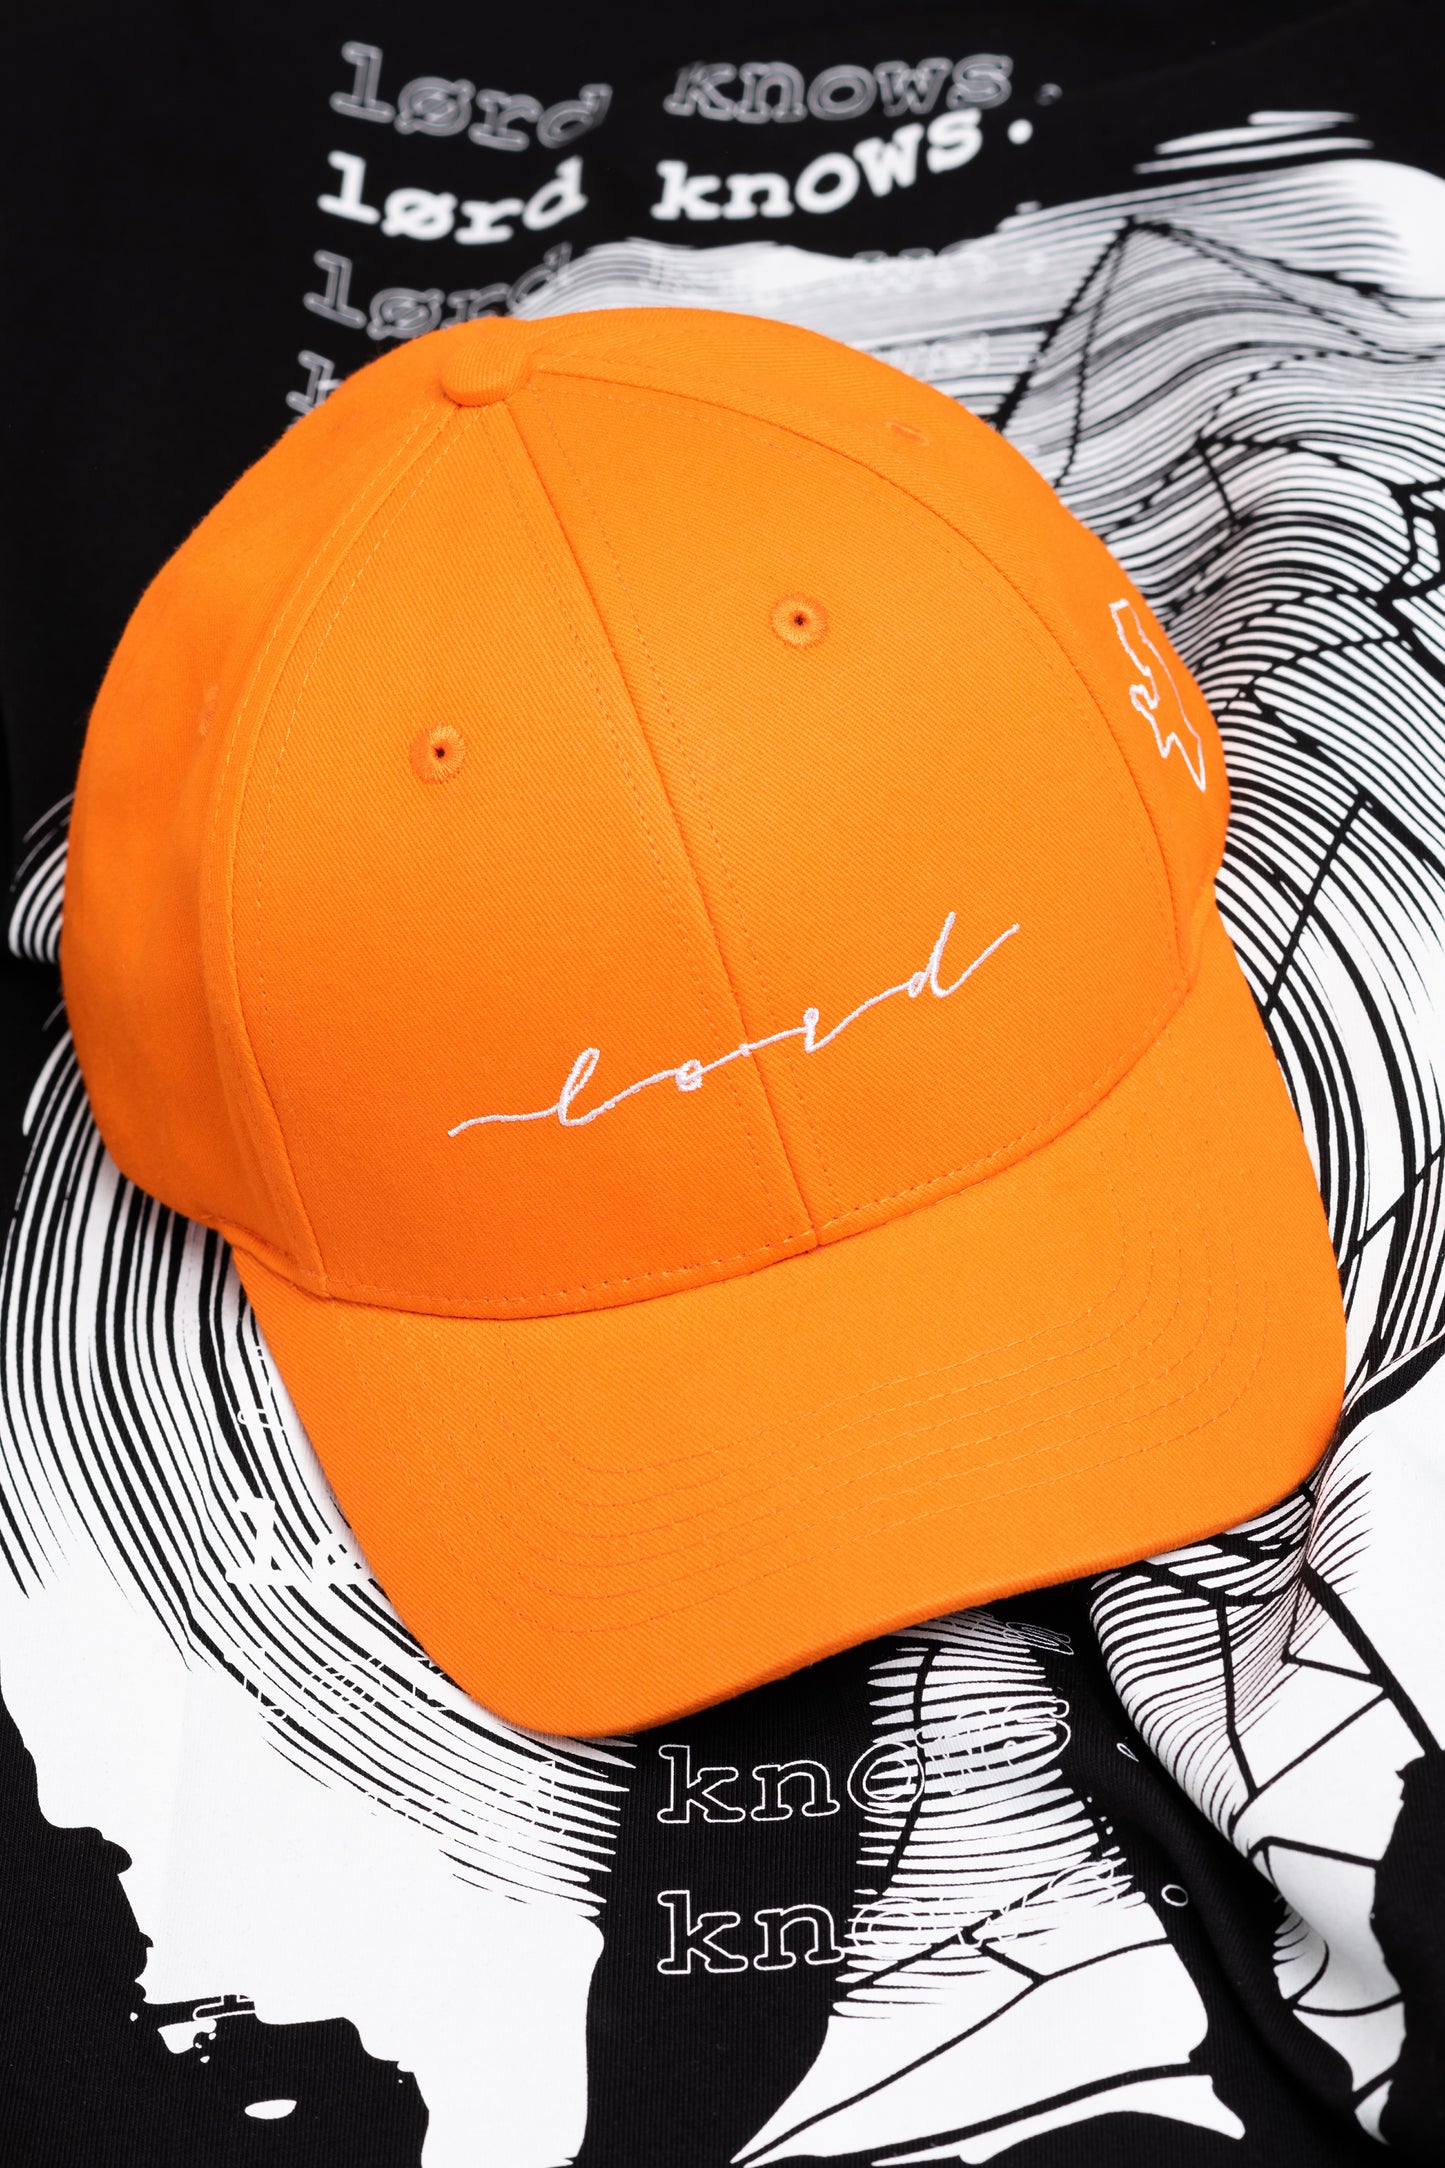 Lørd orange signature cap